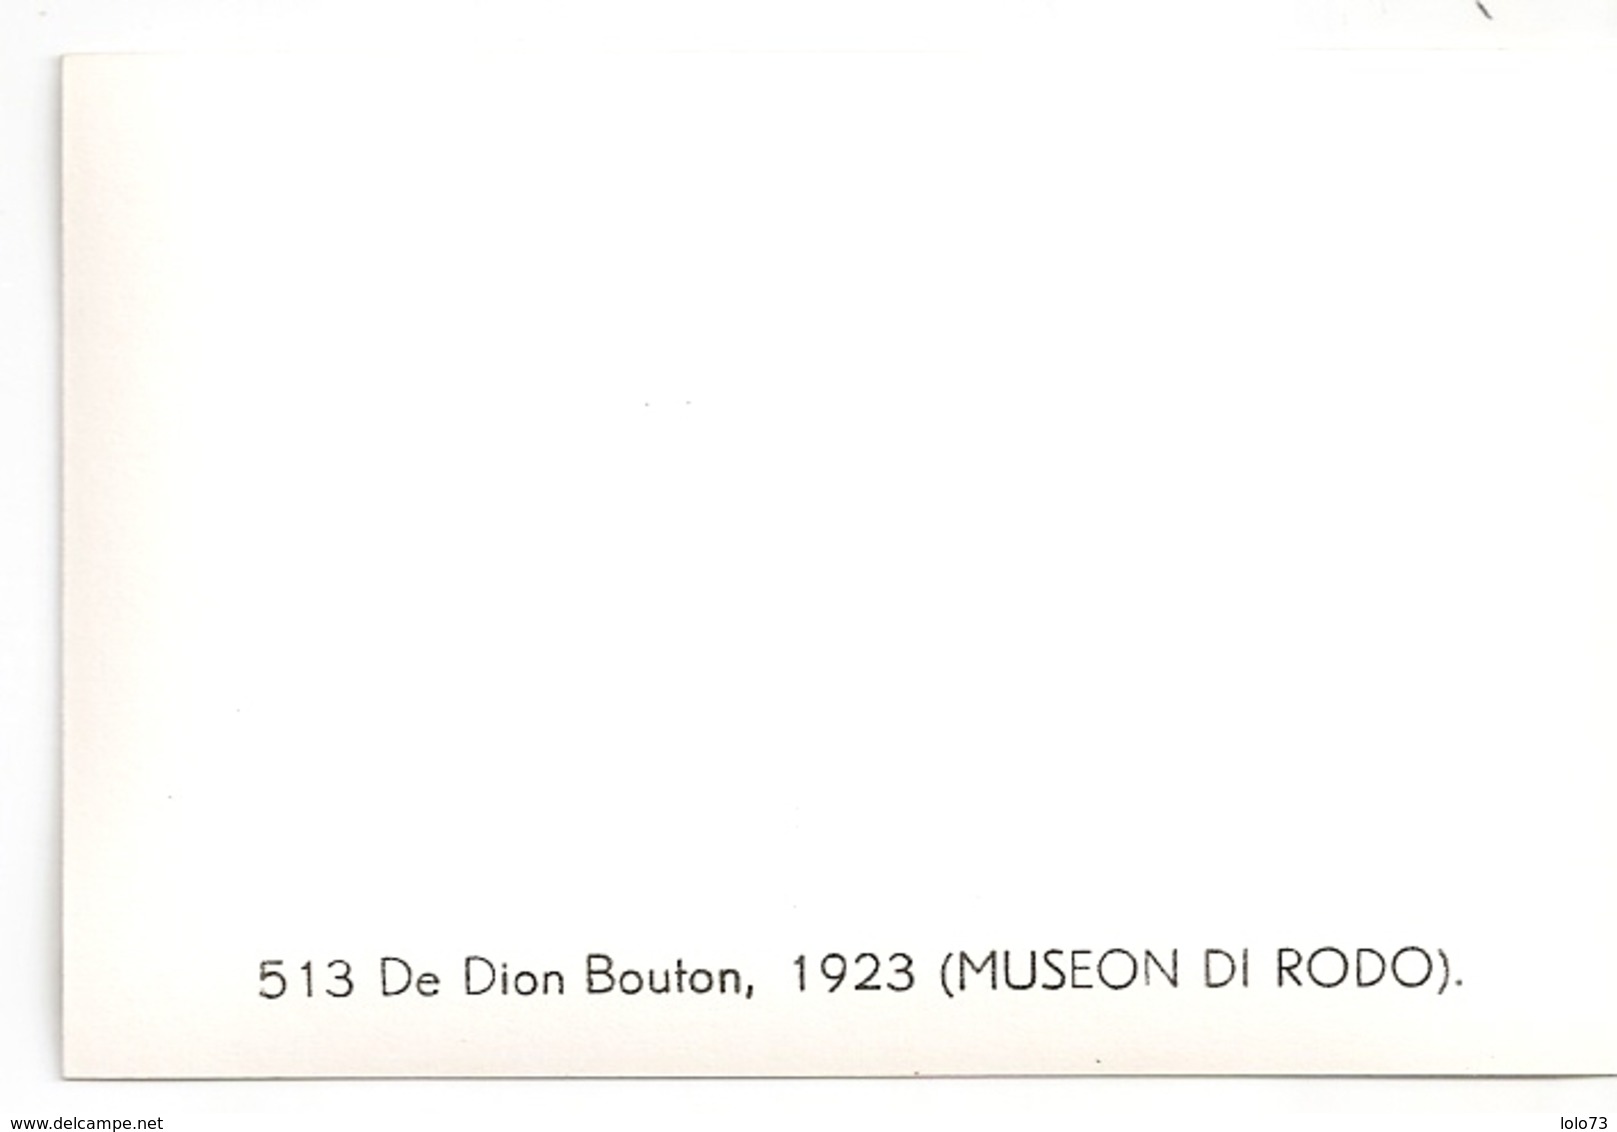 Museon di Rodo - 30 Uzès - carnet lot de 9 mini cartes voitures anciennes